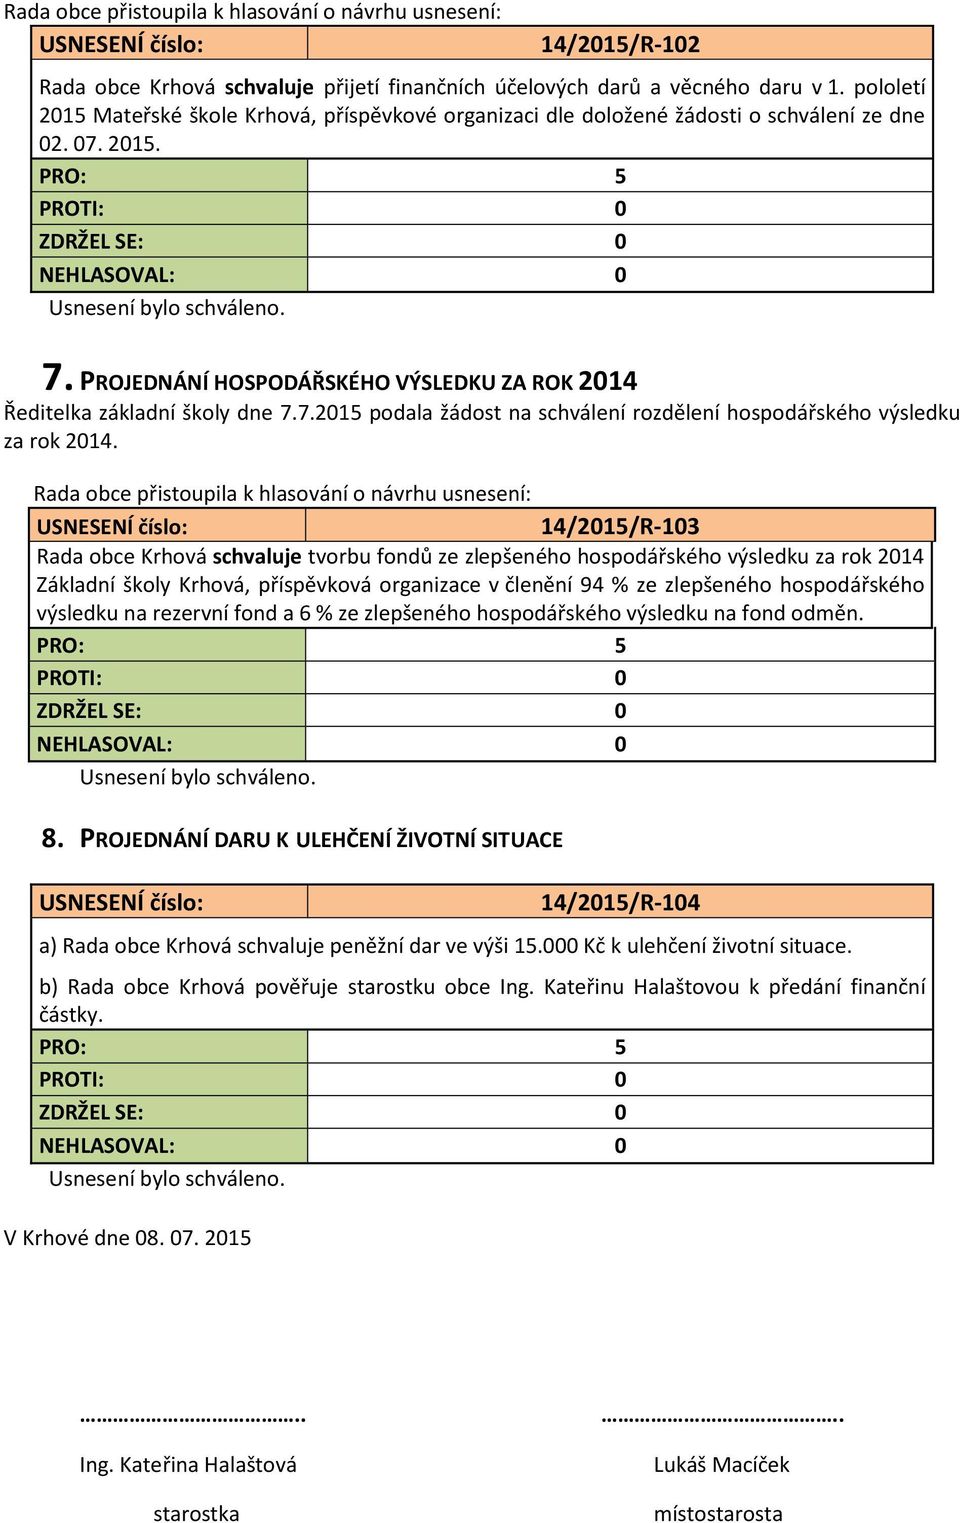 14/2015/R-103 Rada obce Krhová schvaluje tvorbu fondů ze zlepšeného hospodářského výsledku za rok 2014 Základní školy Krhová, příspěvková organizace v členění 94 % ze zlepšeného hospodářského